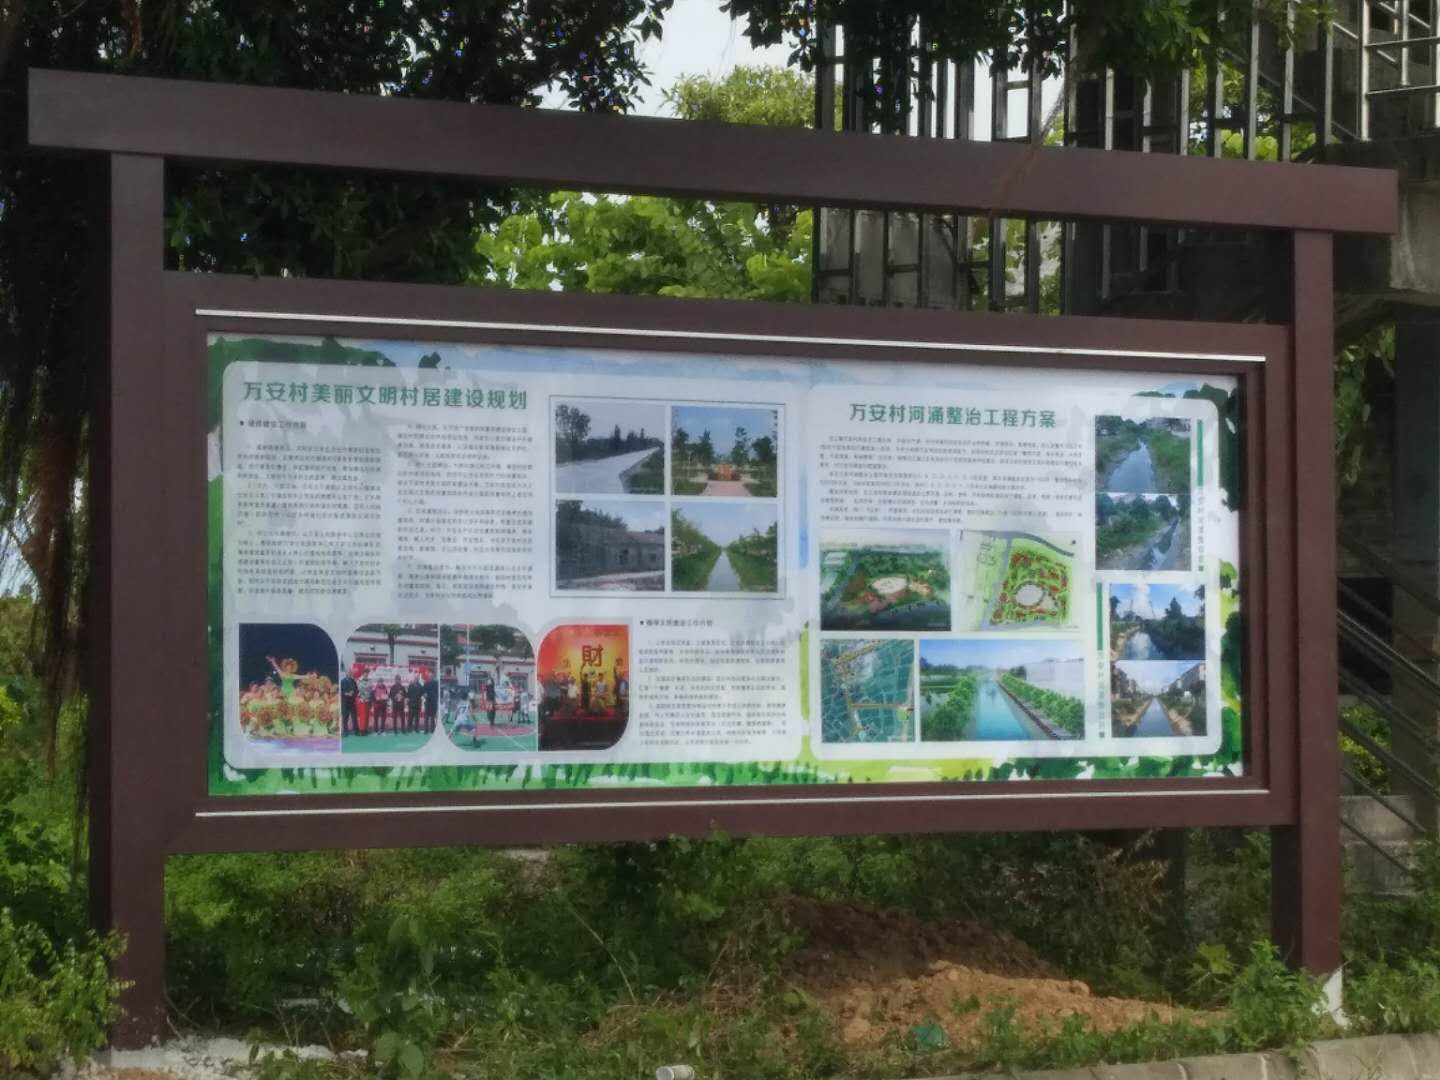 广州厂家定制公园景观小品仿木路牌指示牌,可根据图纸制作